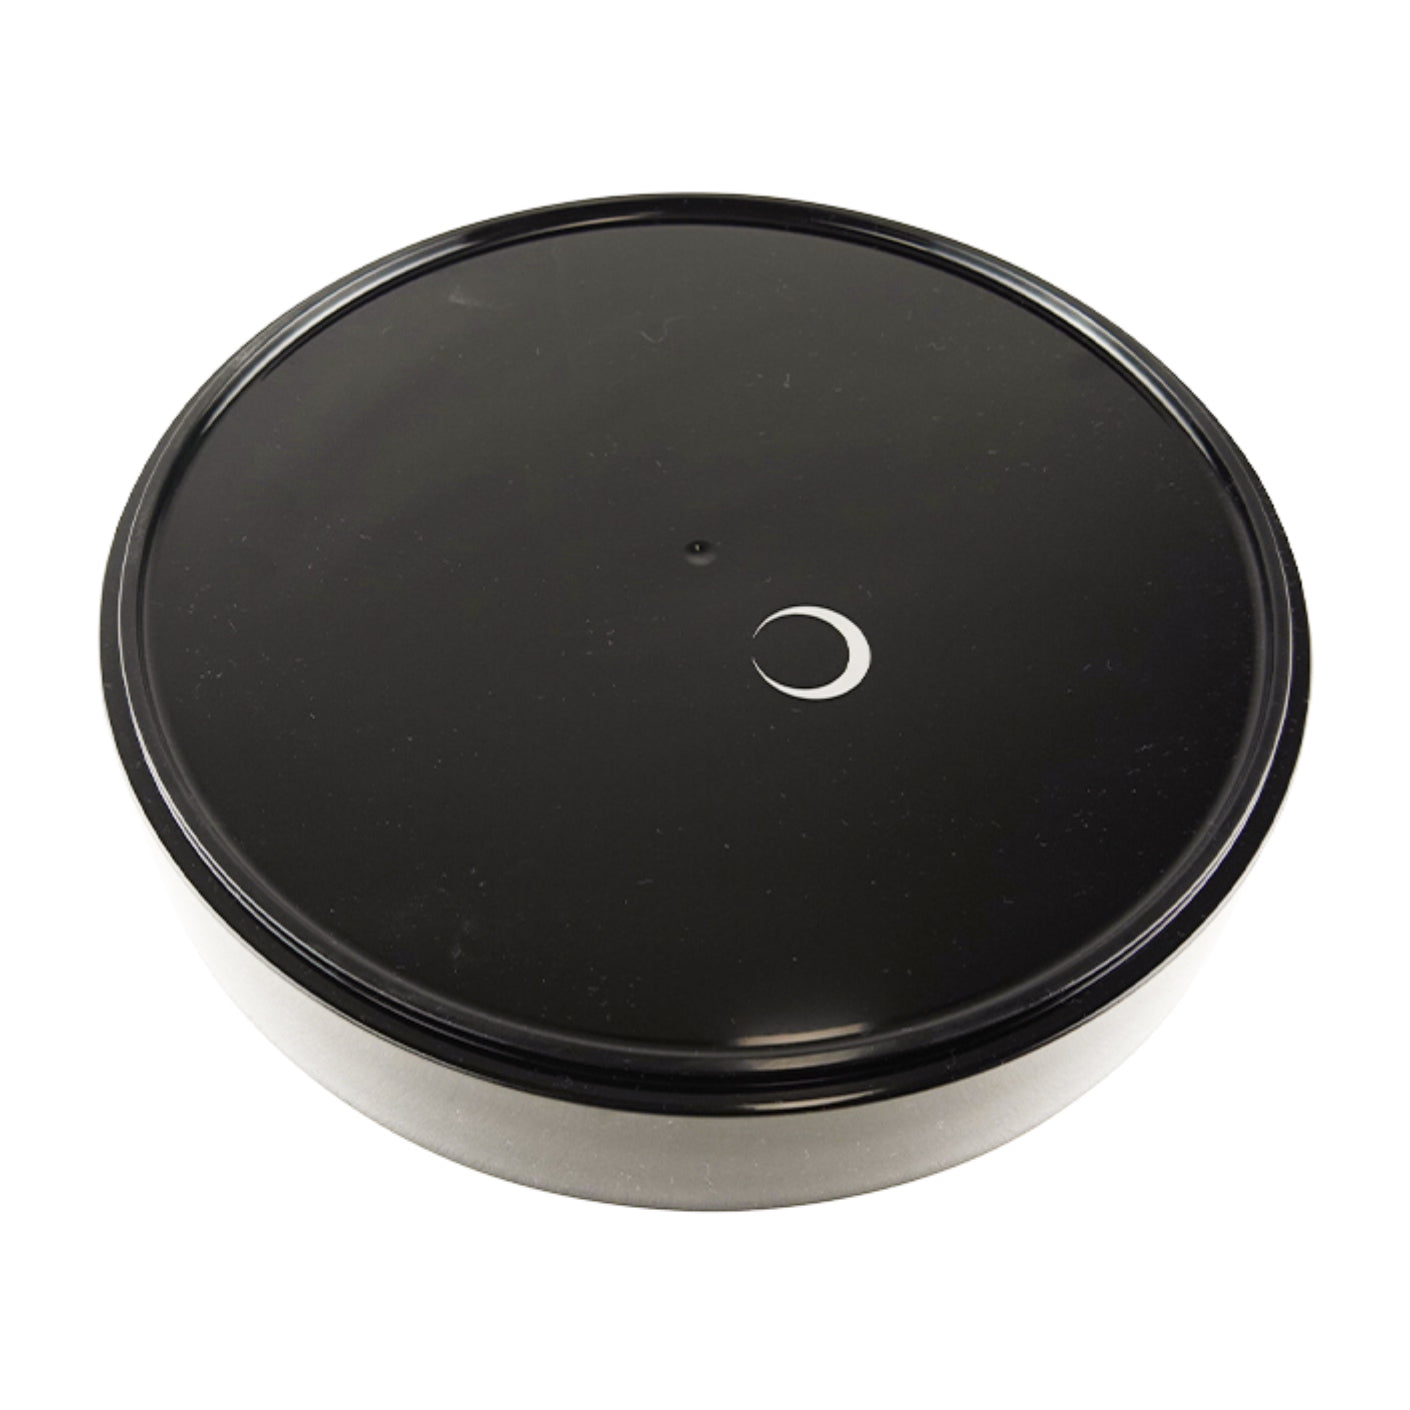 Basic round basin (plastic) black